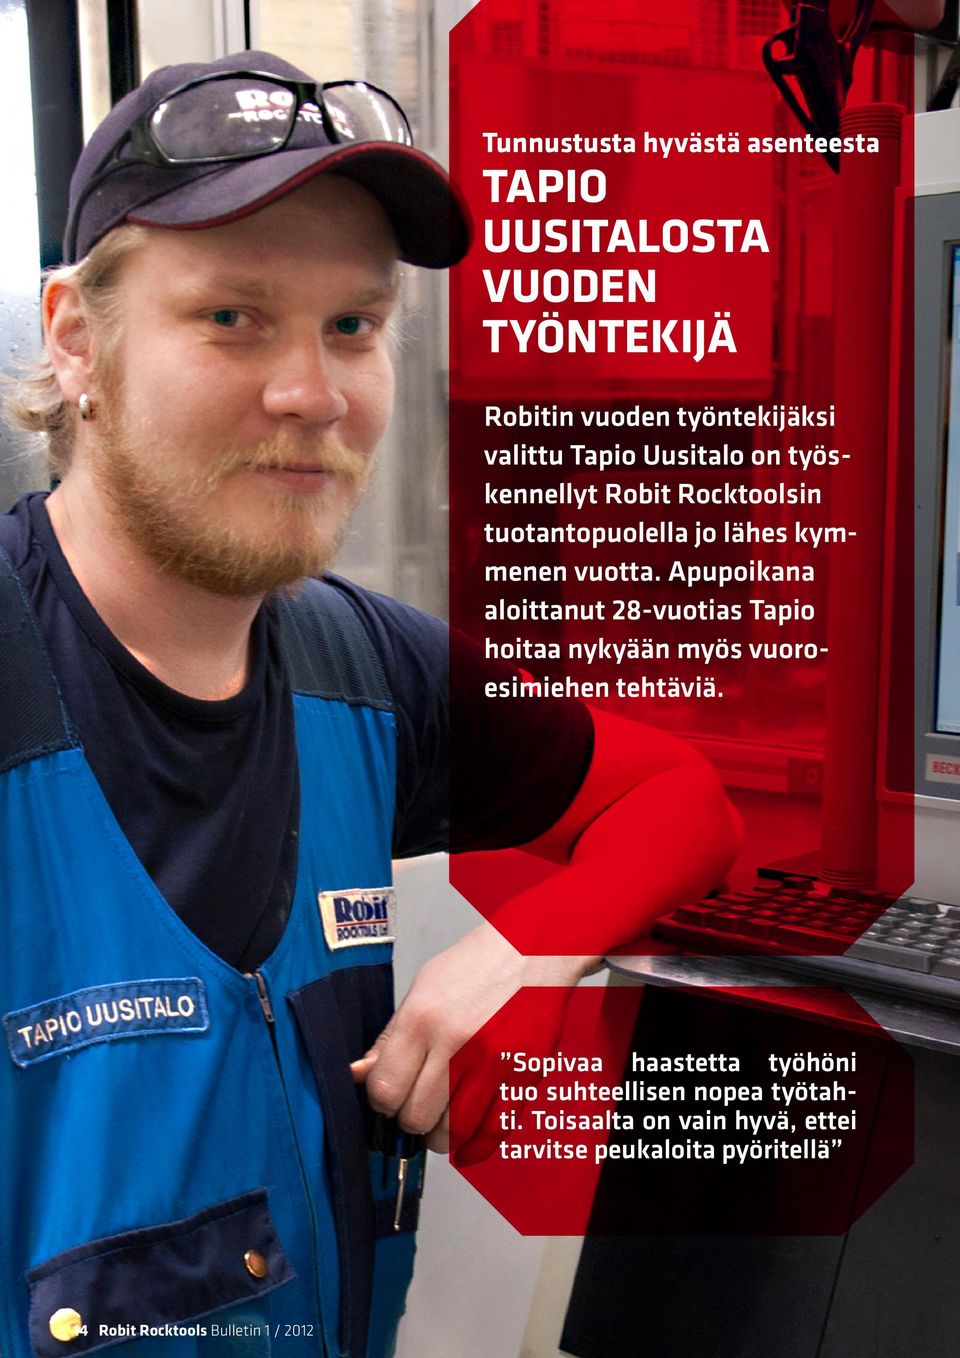 Apupoikana aloittanut 28-vuotias Tapio hoitaa nykyään myös vuoroesimiehen tehtäviä.